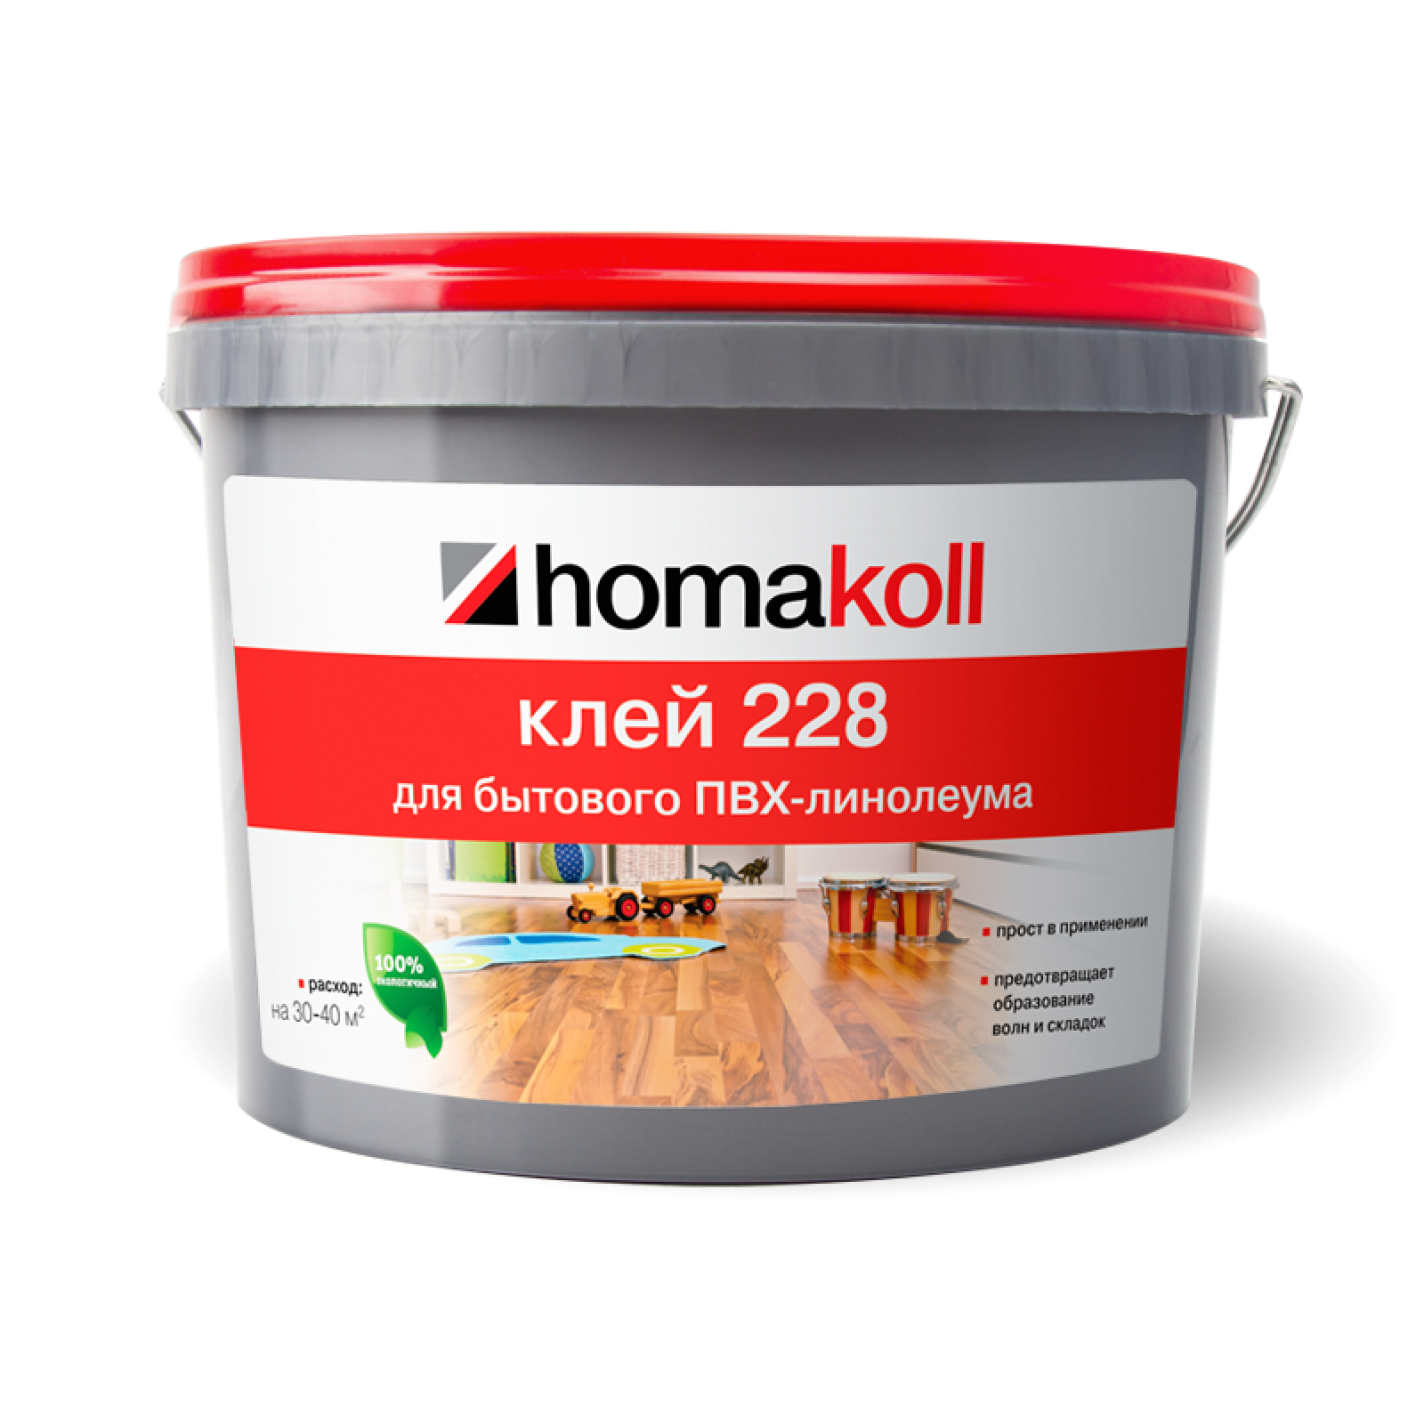 Клей homakoll 228 (7 кг)